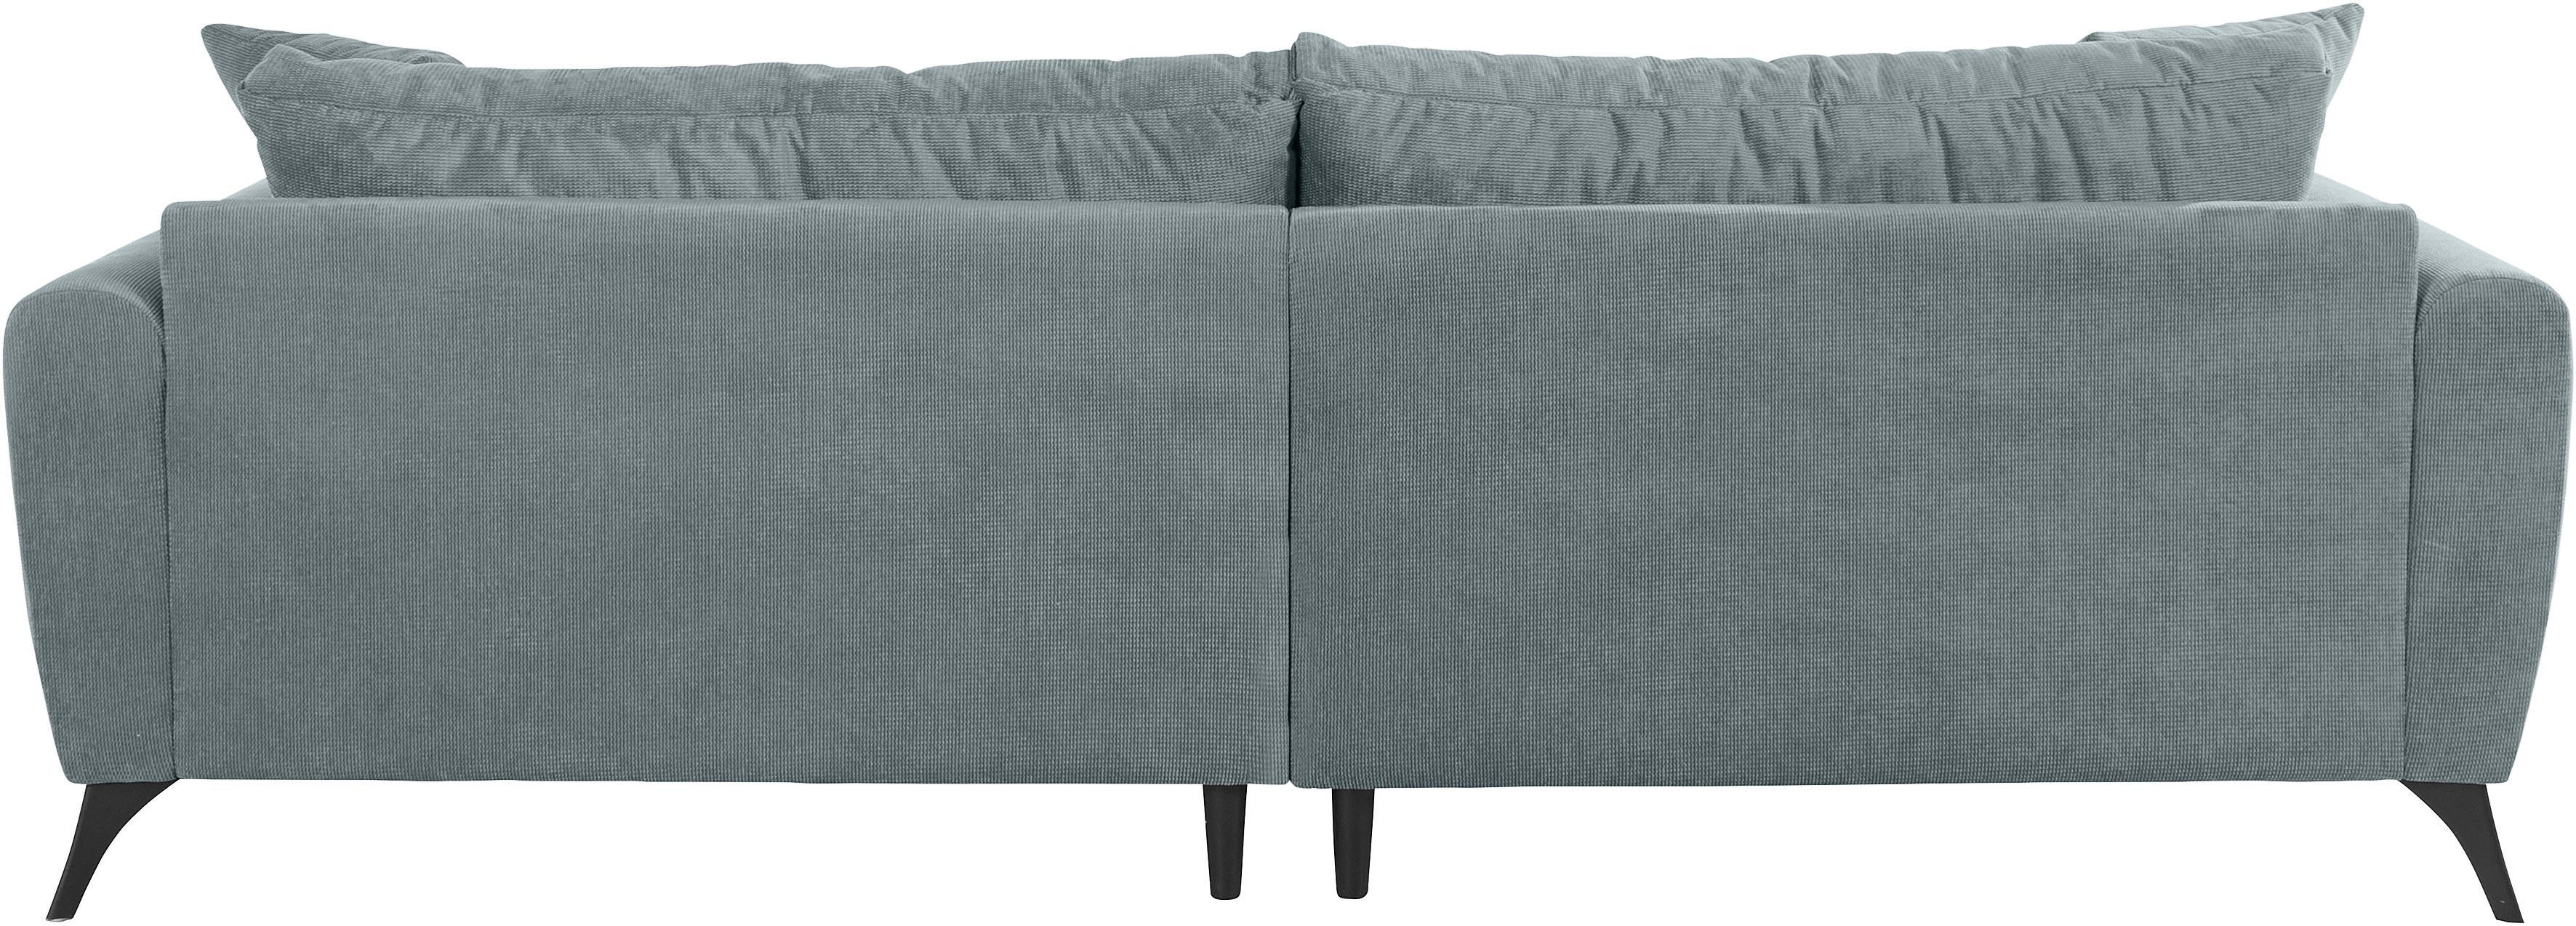 INOSIGN Big-Sofa bis Lörby, 140kg Belastbarkeit mit Aqua clean-Bezug auch pro Sitzplatz